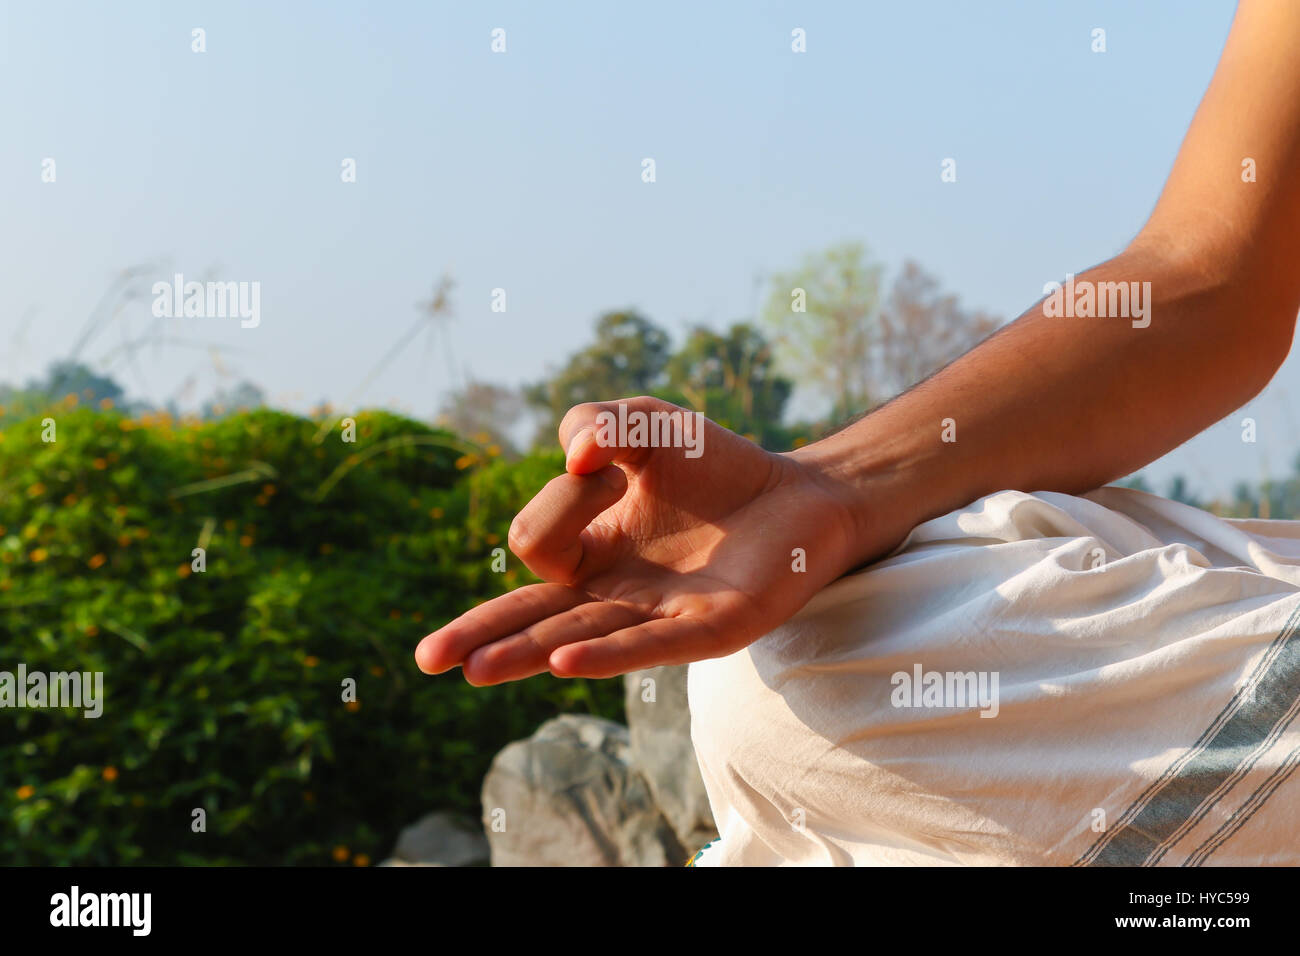 Un indio de mano en la posición de meditación o Jnana Mudra Foto de stock